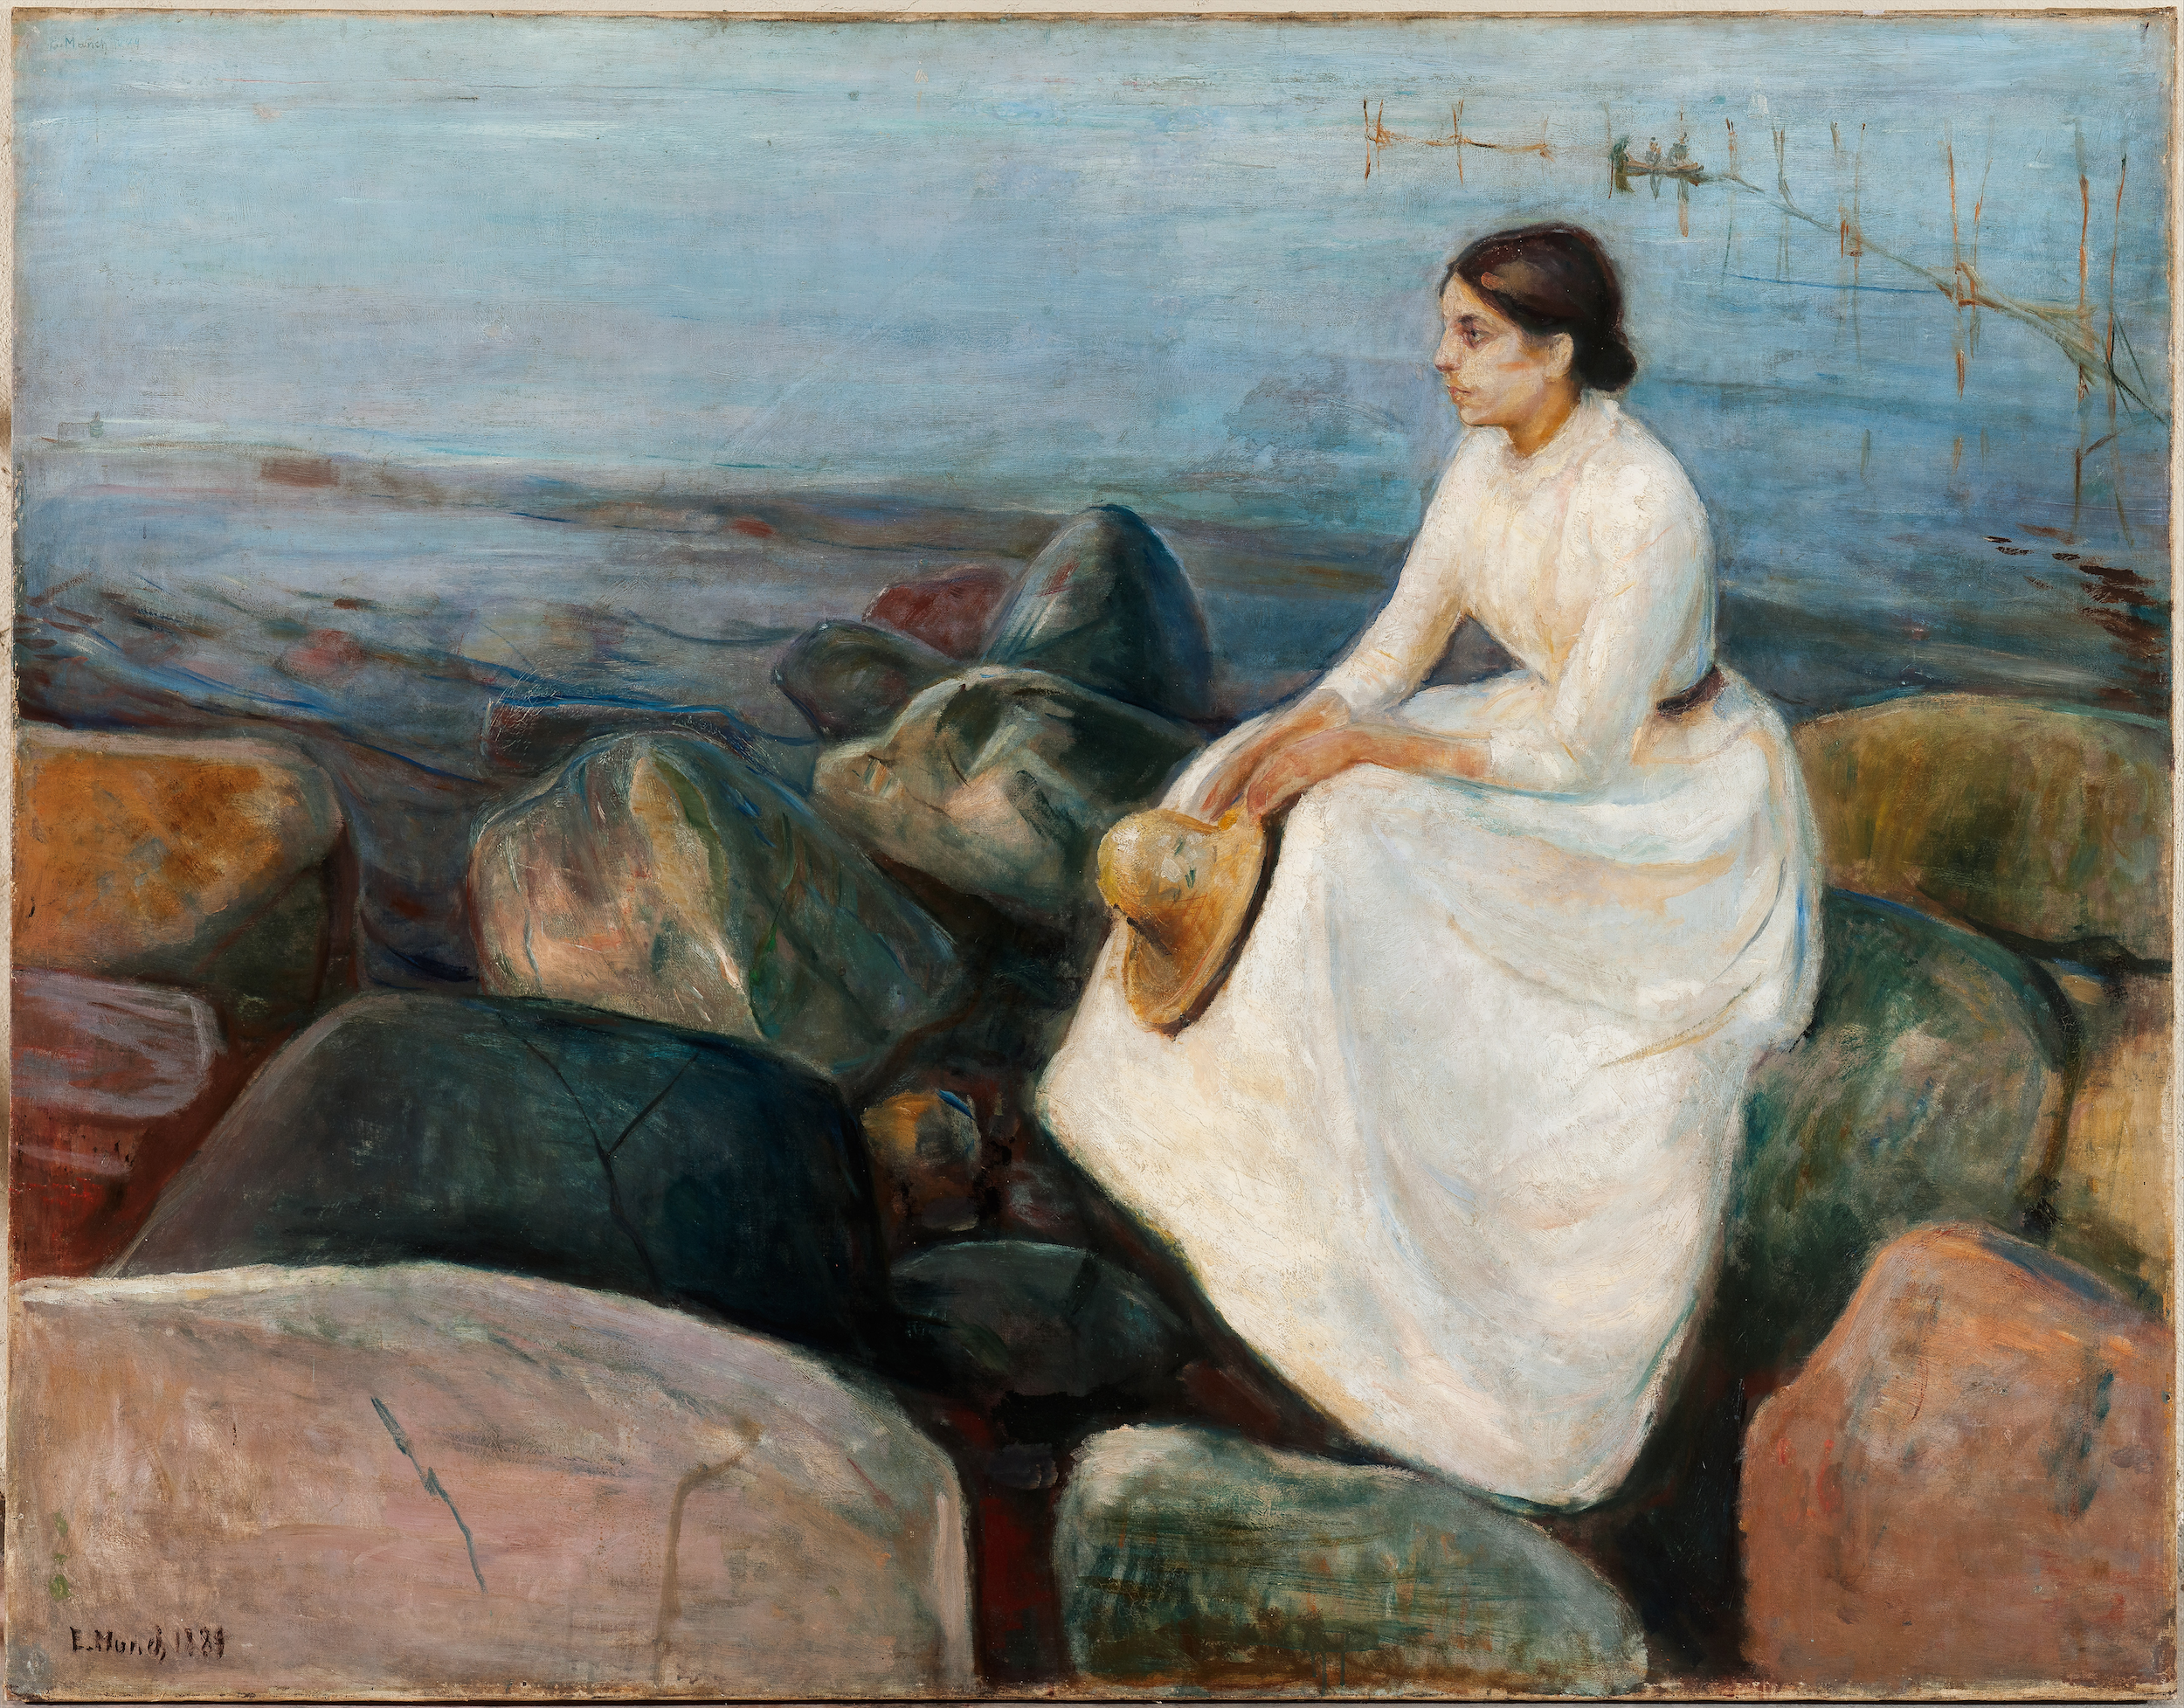 Noapte de vară, Inger pe malul mării  by Edvard Munch - 1889 - 126.5 x 161.5 cm 